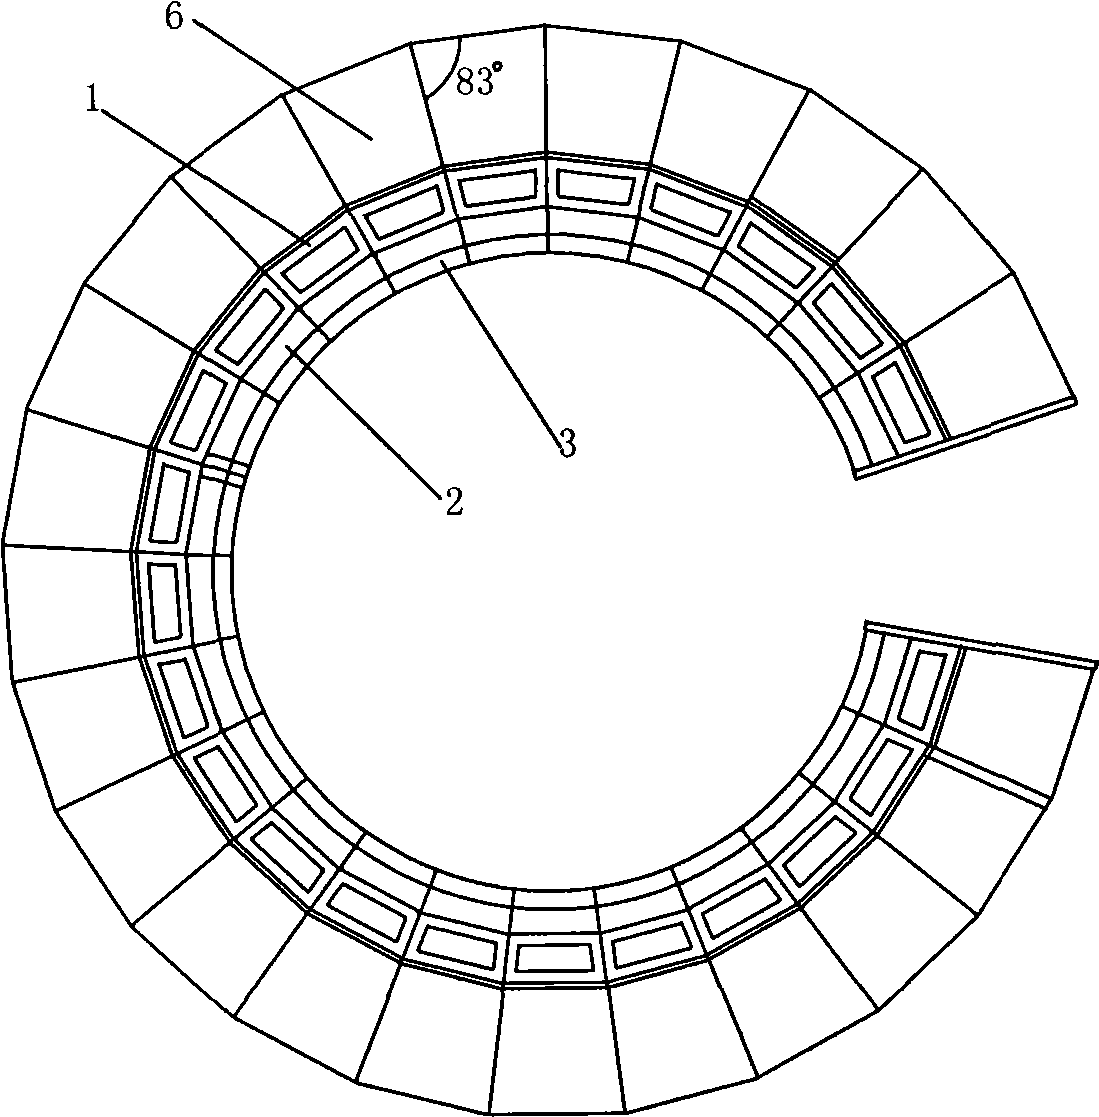 Modular assembled circular control platform